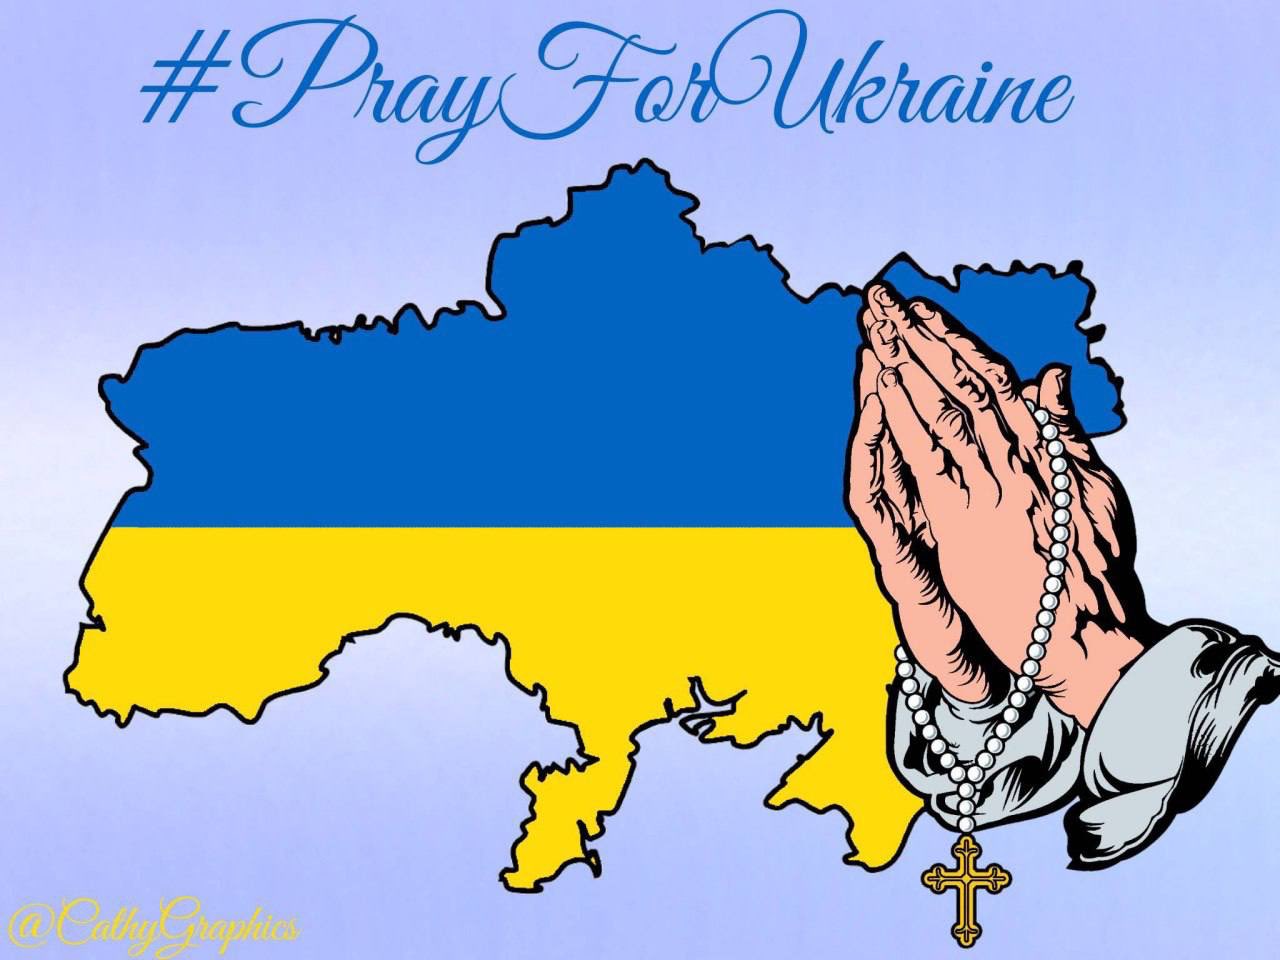 For ukraine pray Discipleship Ministries